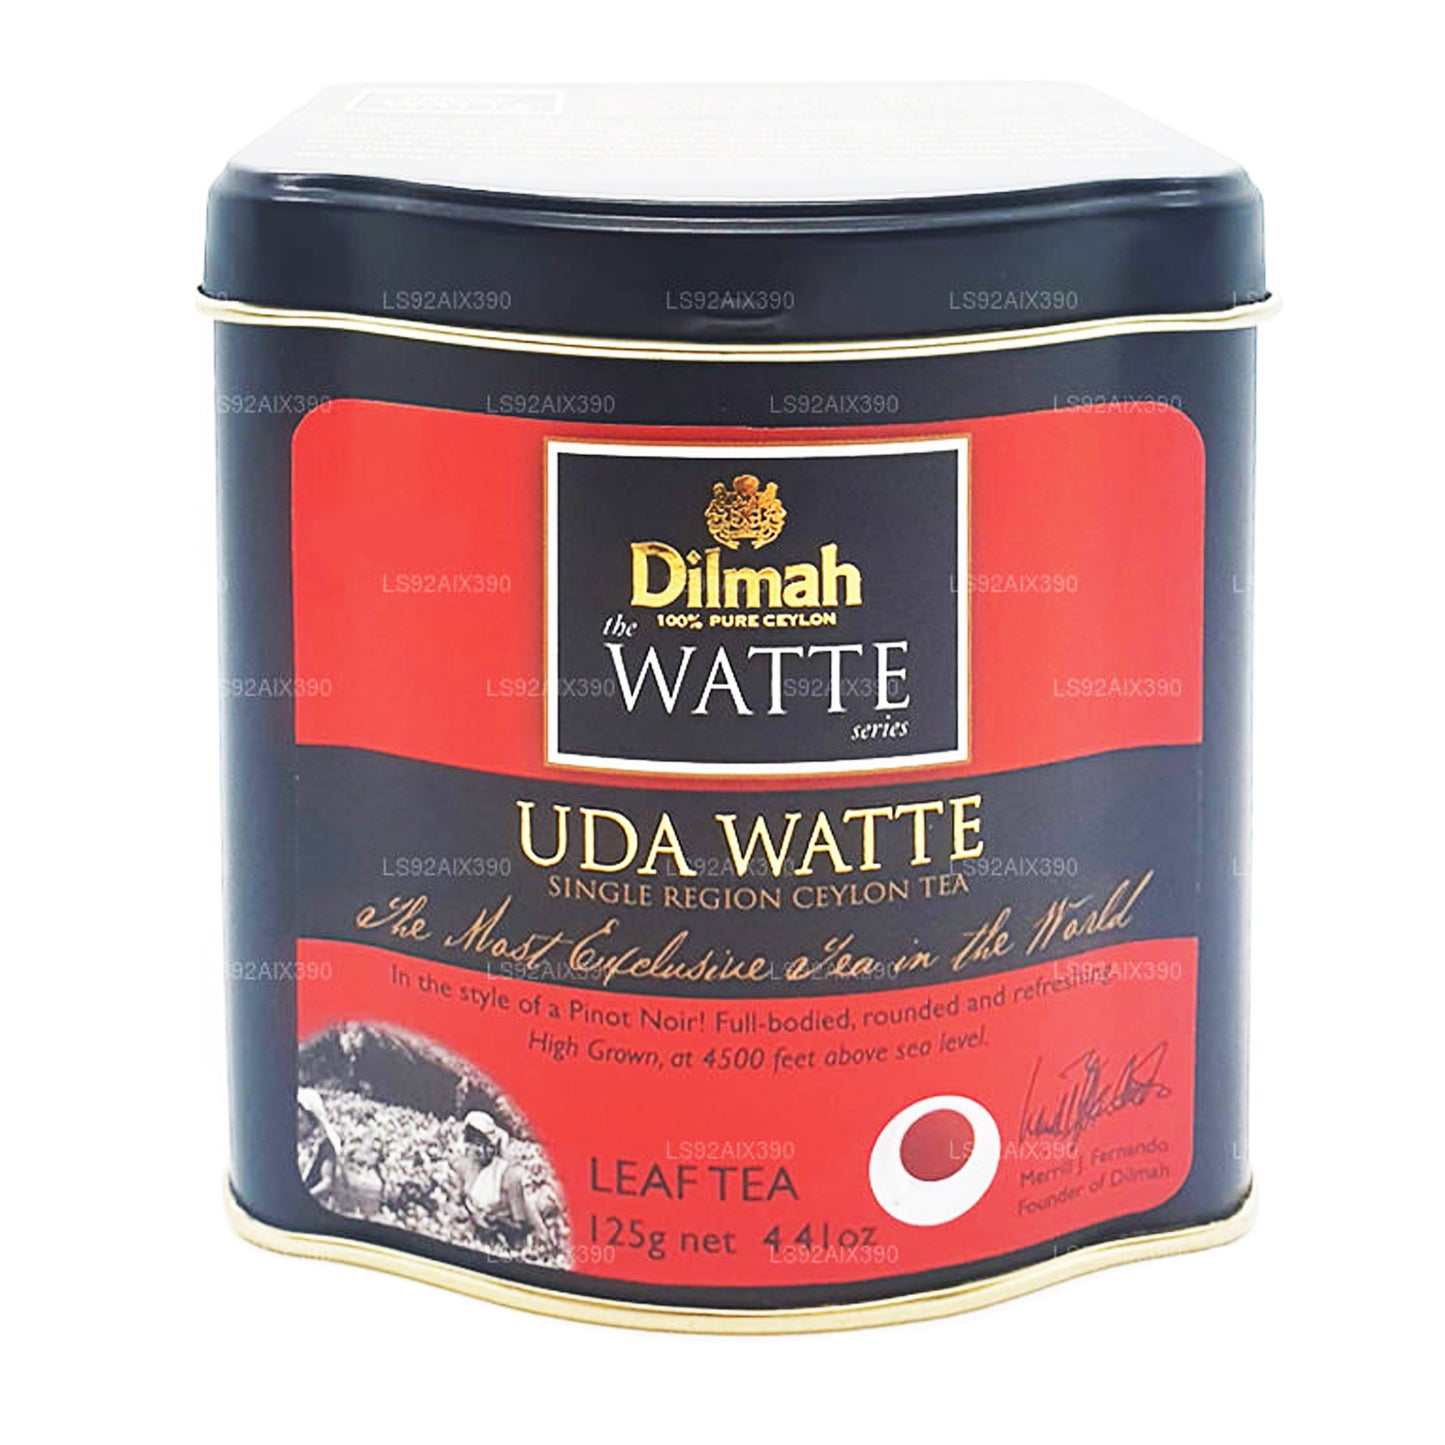 Dilmah Uda Watte thee met losse bladeren (125 g)